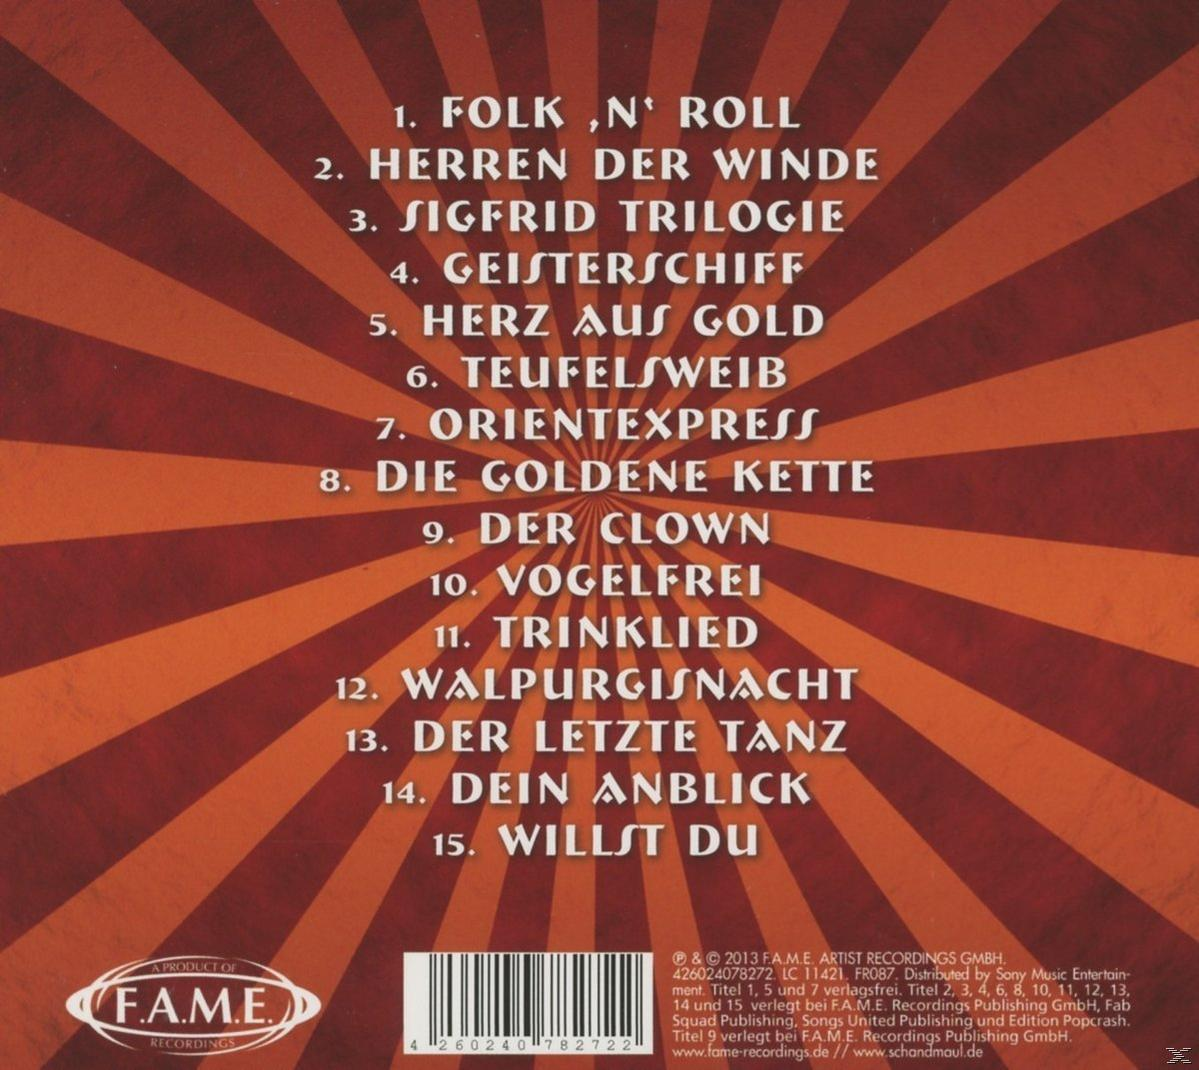 Schandmaul - SO WEIT - SO GUT (CD) 